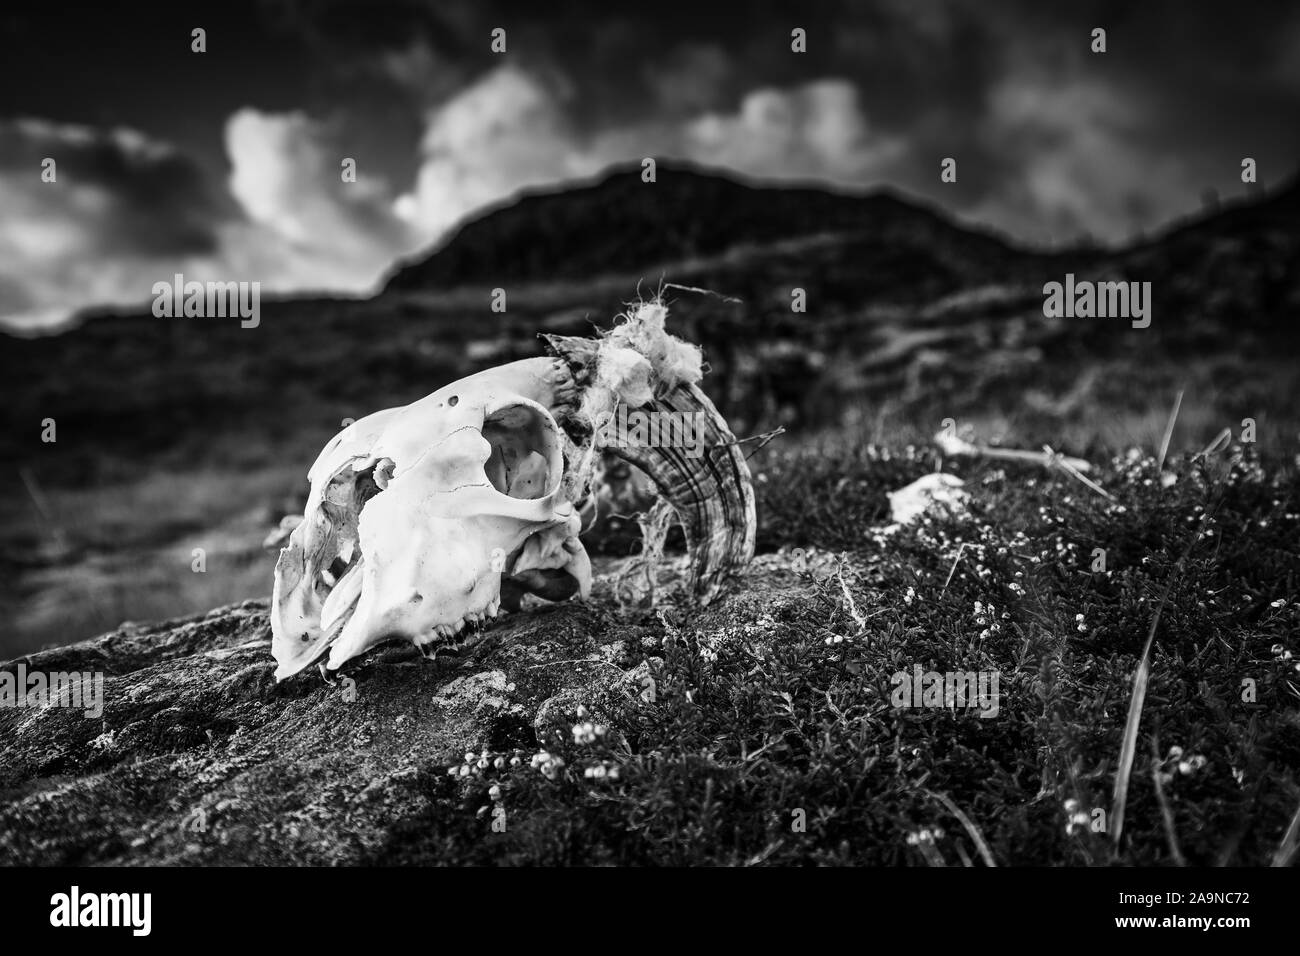 Crâne de mouton wiyj rock mountain sur corne en haut de falaise Gale Lake District, UK - Monochrome modifier Banque D'Images